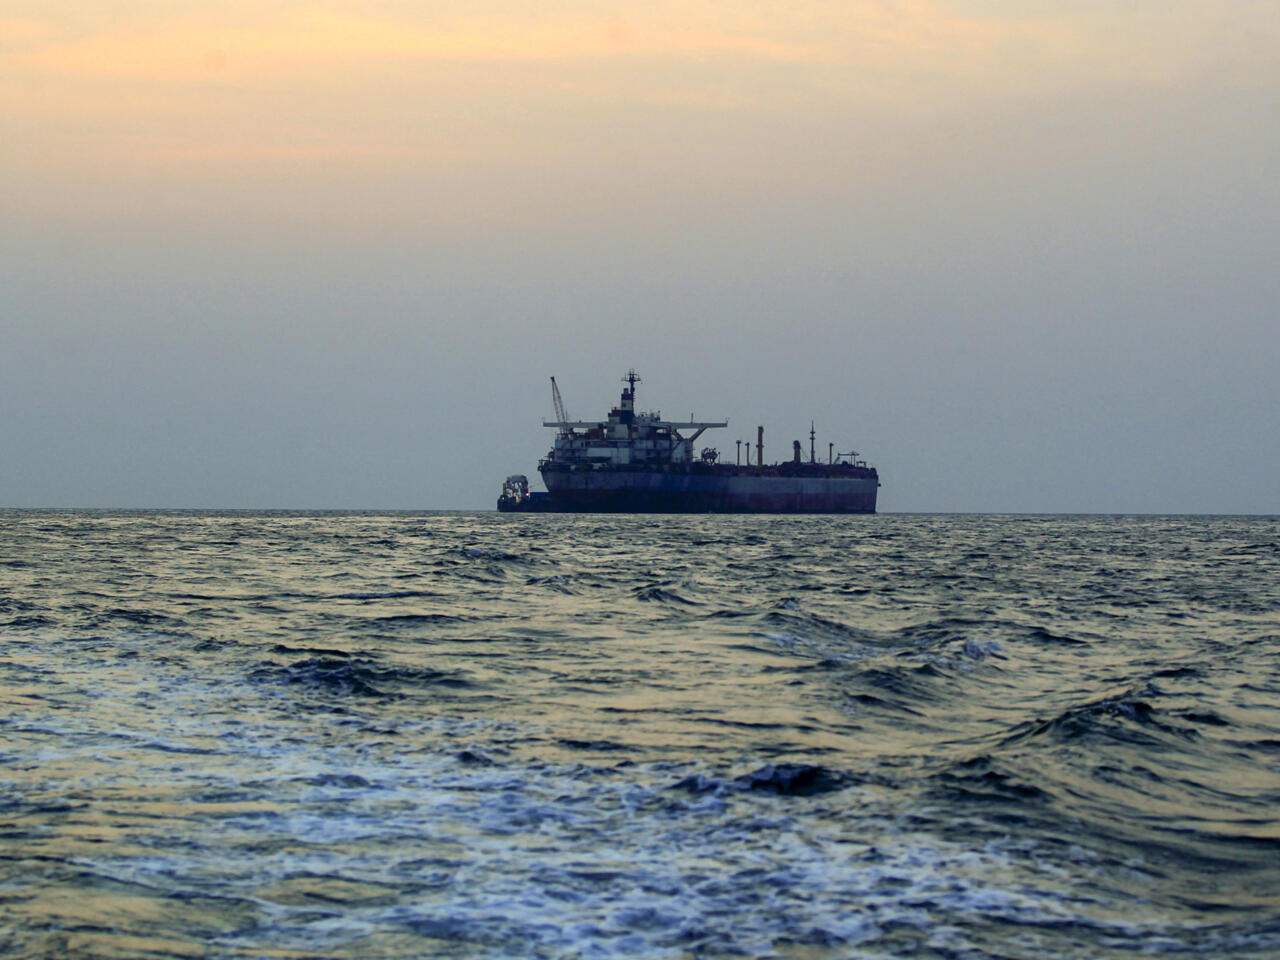 أ.ف.ب: سفينة تبلغ عن هجوم بصاروخين قبالة سواحل اليمن